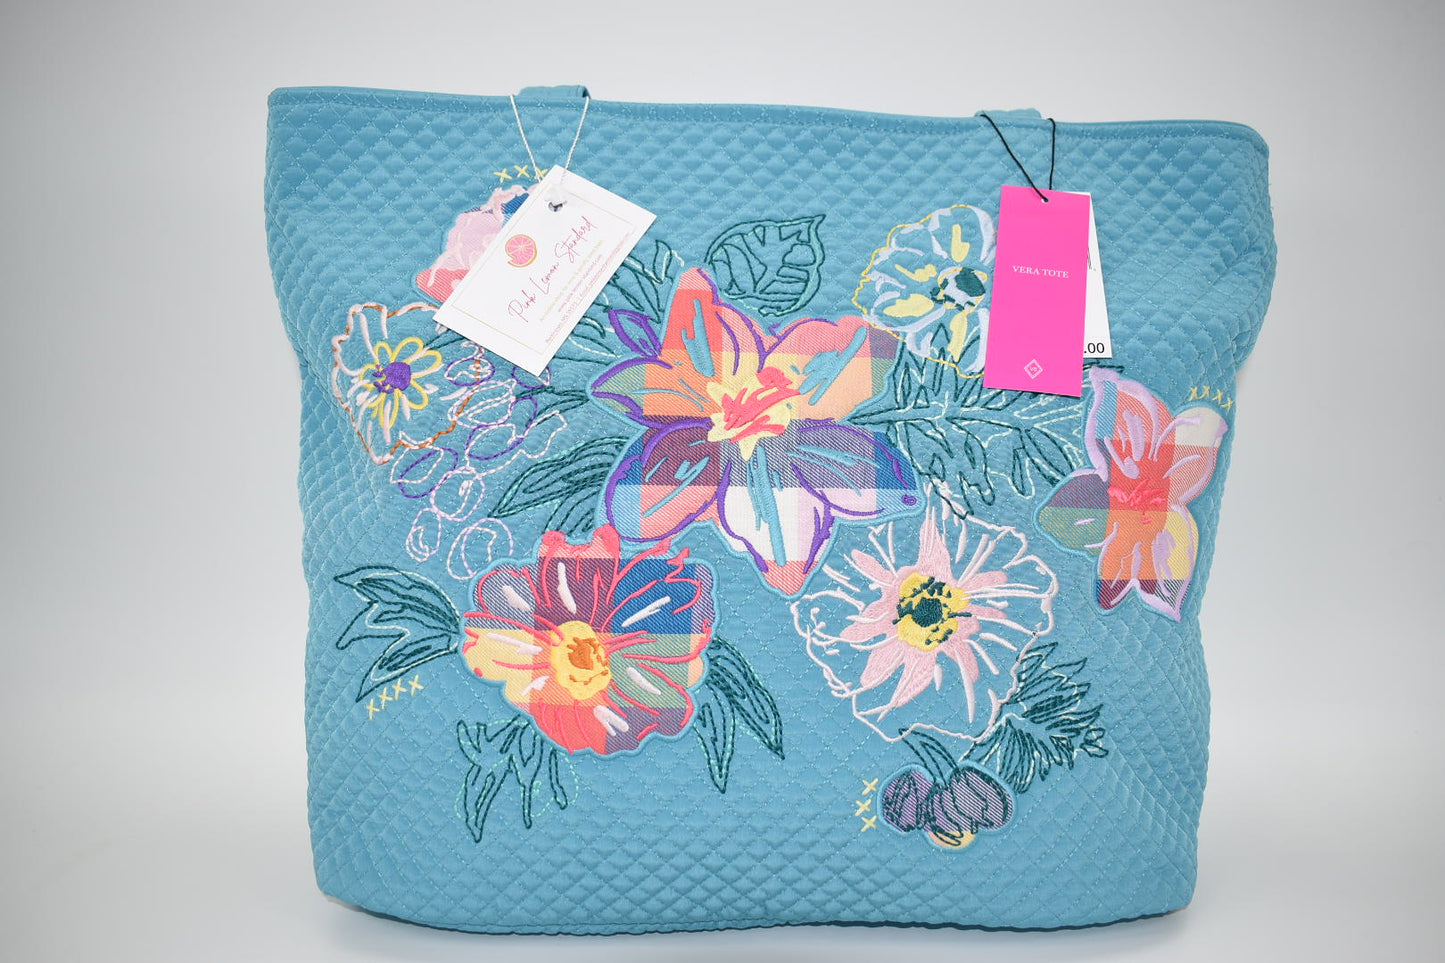 Vera Bradley Large Microfiber Vera Tote Bag in "Happy Blooms" Pattern